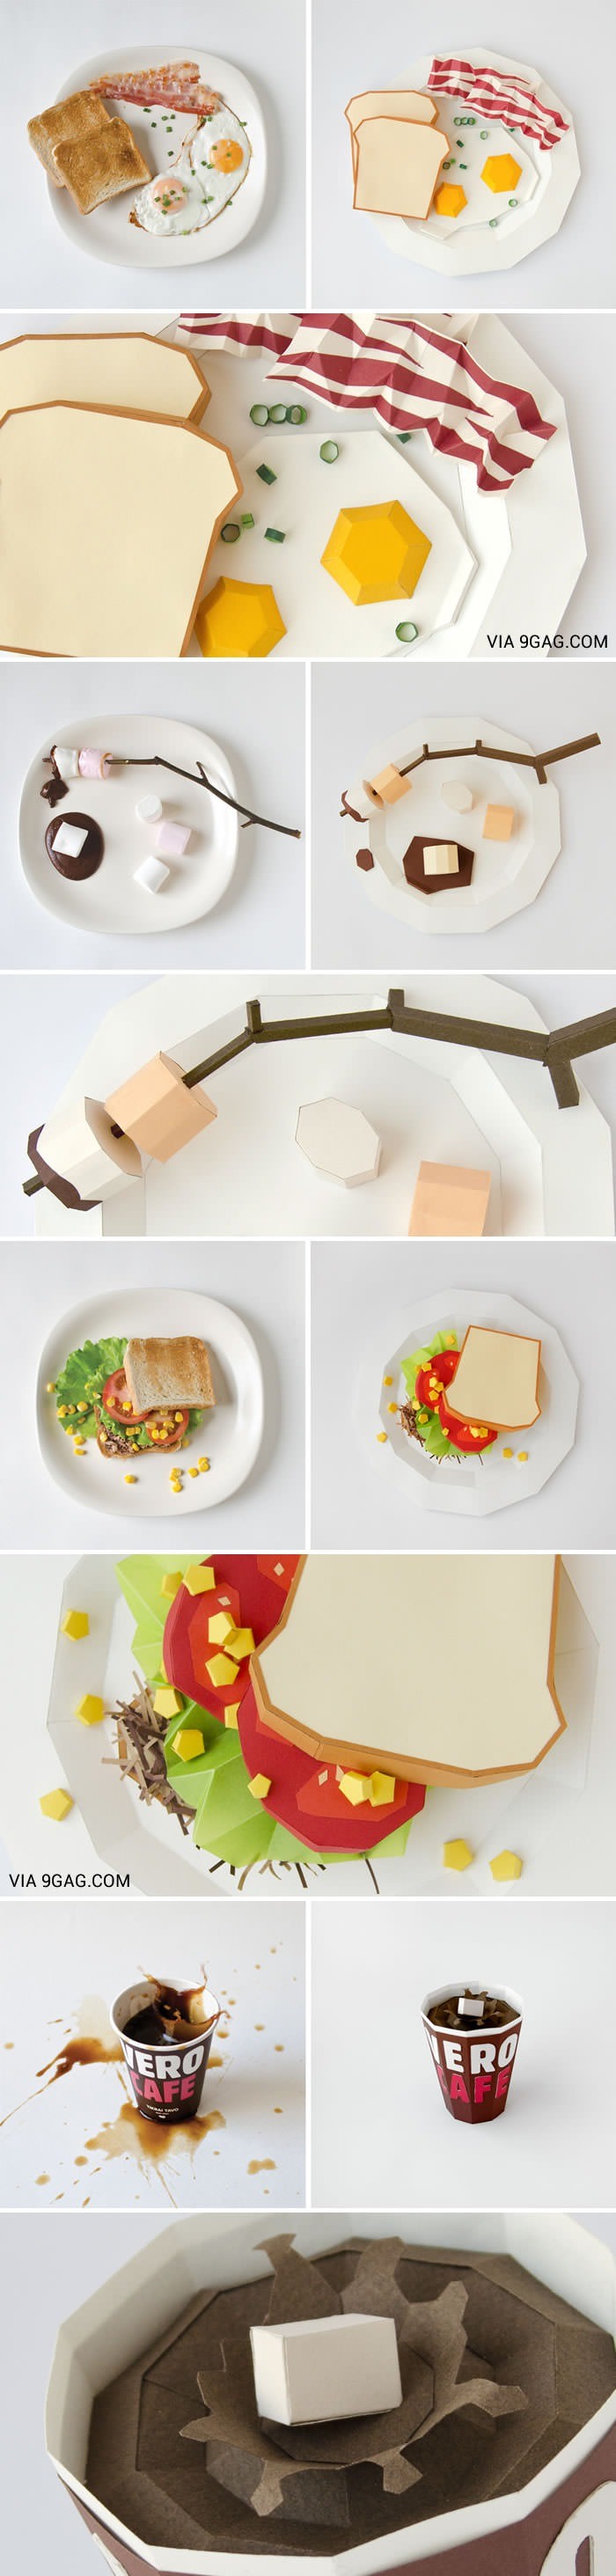 Papercraft Food Paper Art Food & Art Pinterest